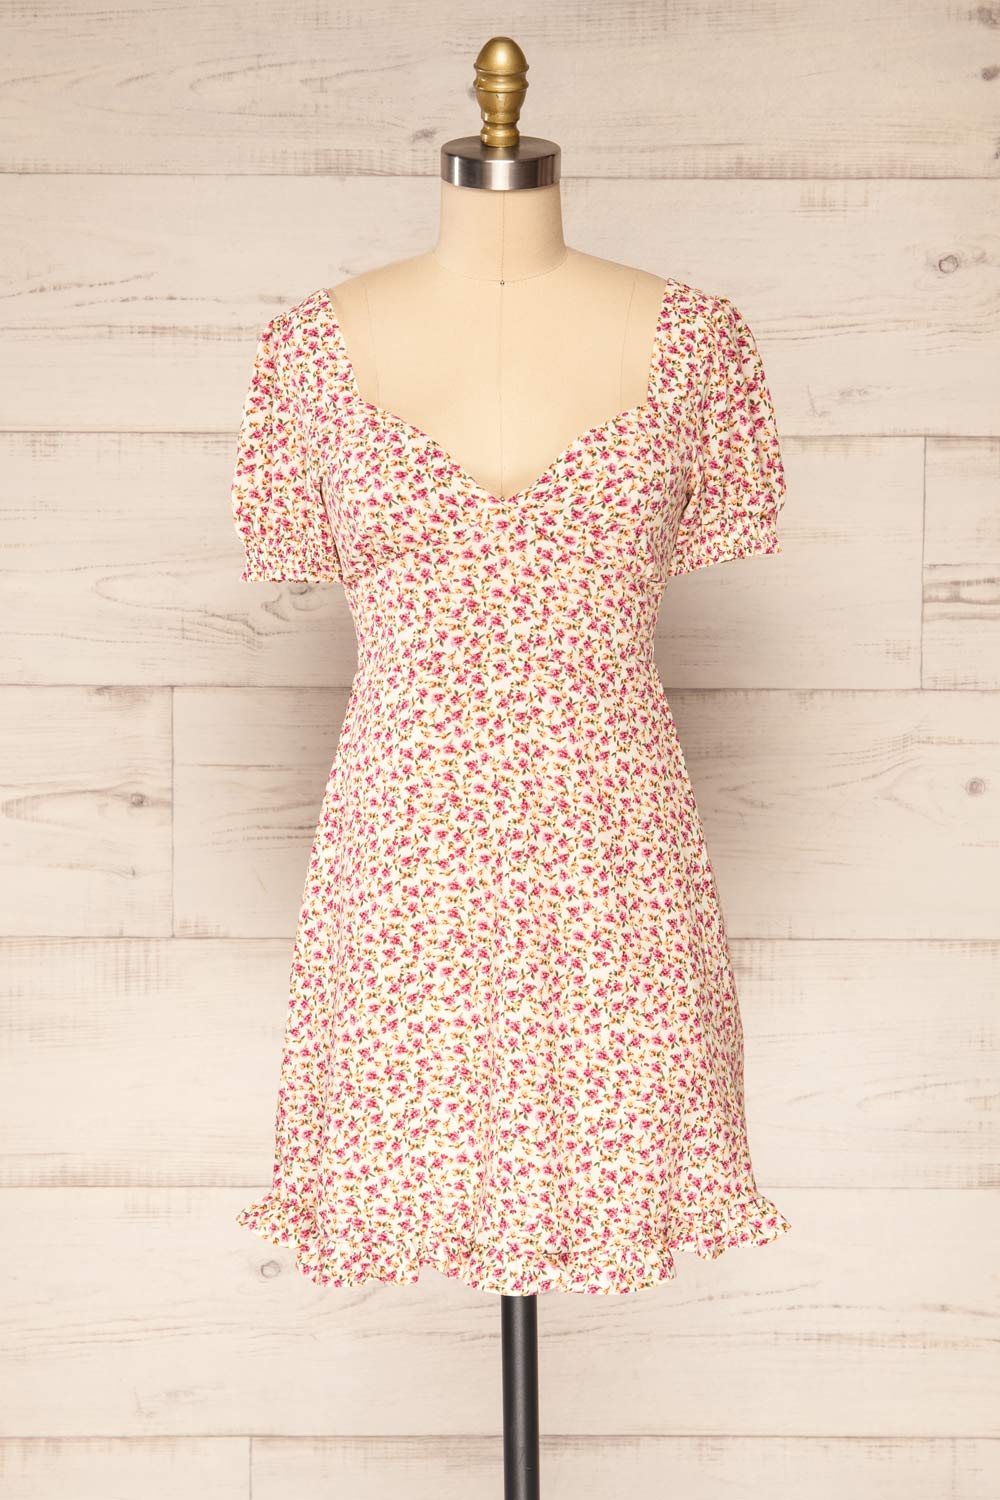 Osno Cream Short Sleeve Floral Dress | La petite garçonne front view